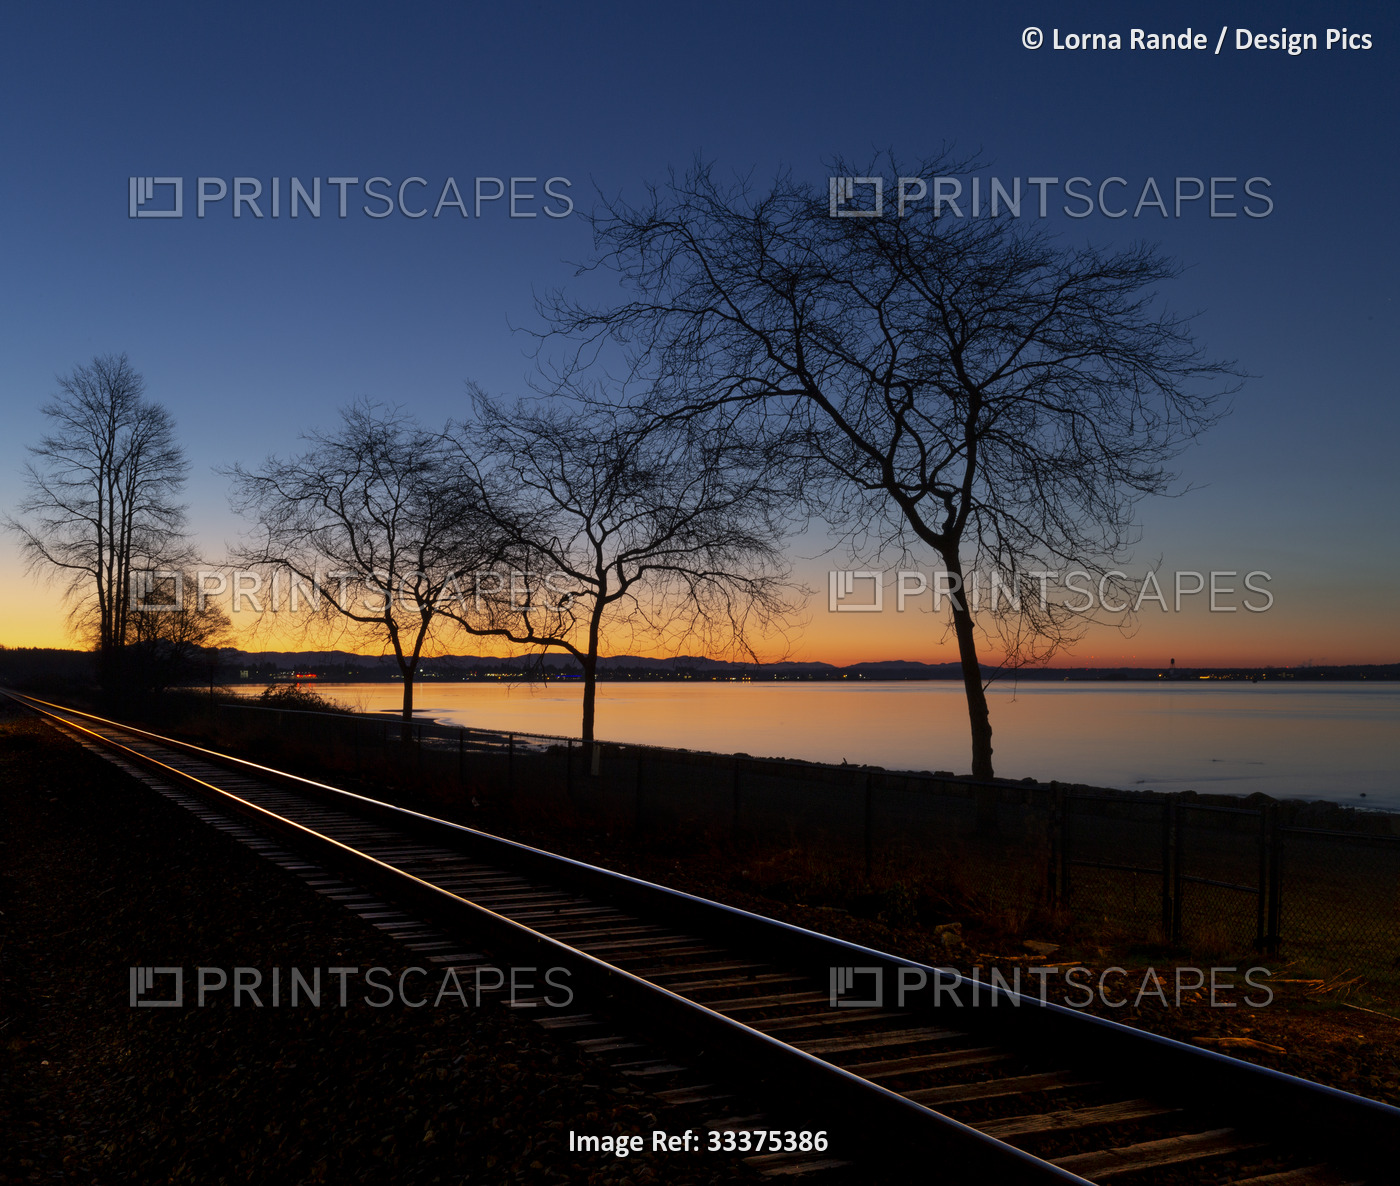 Early morning light illuminates the coast and train tracks running along the ...